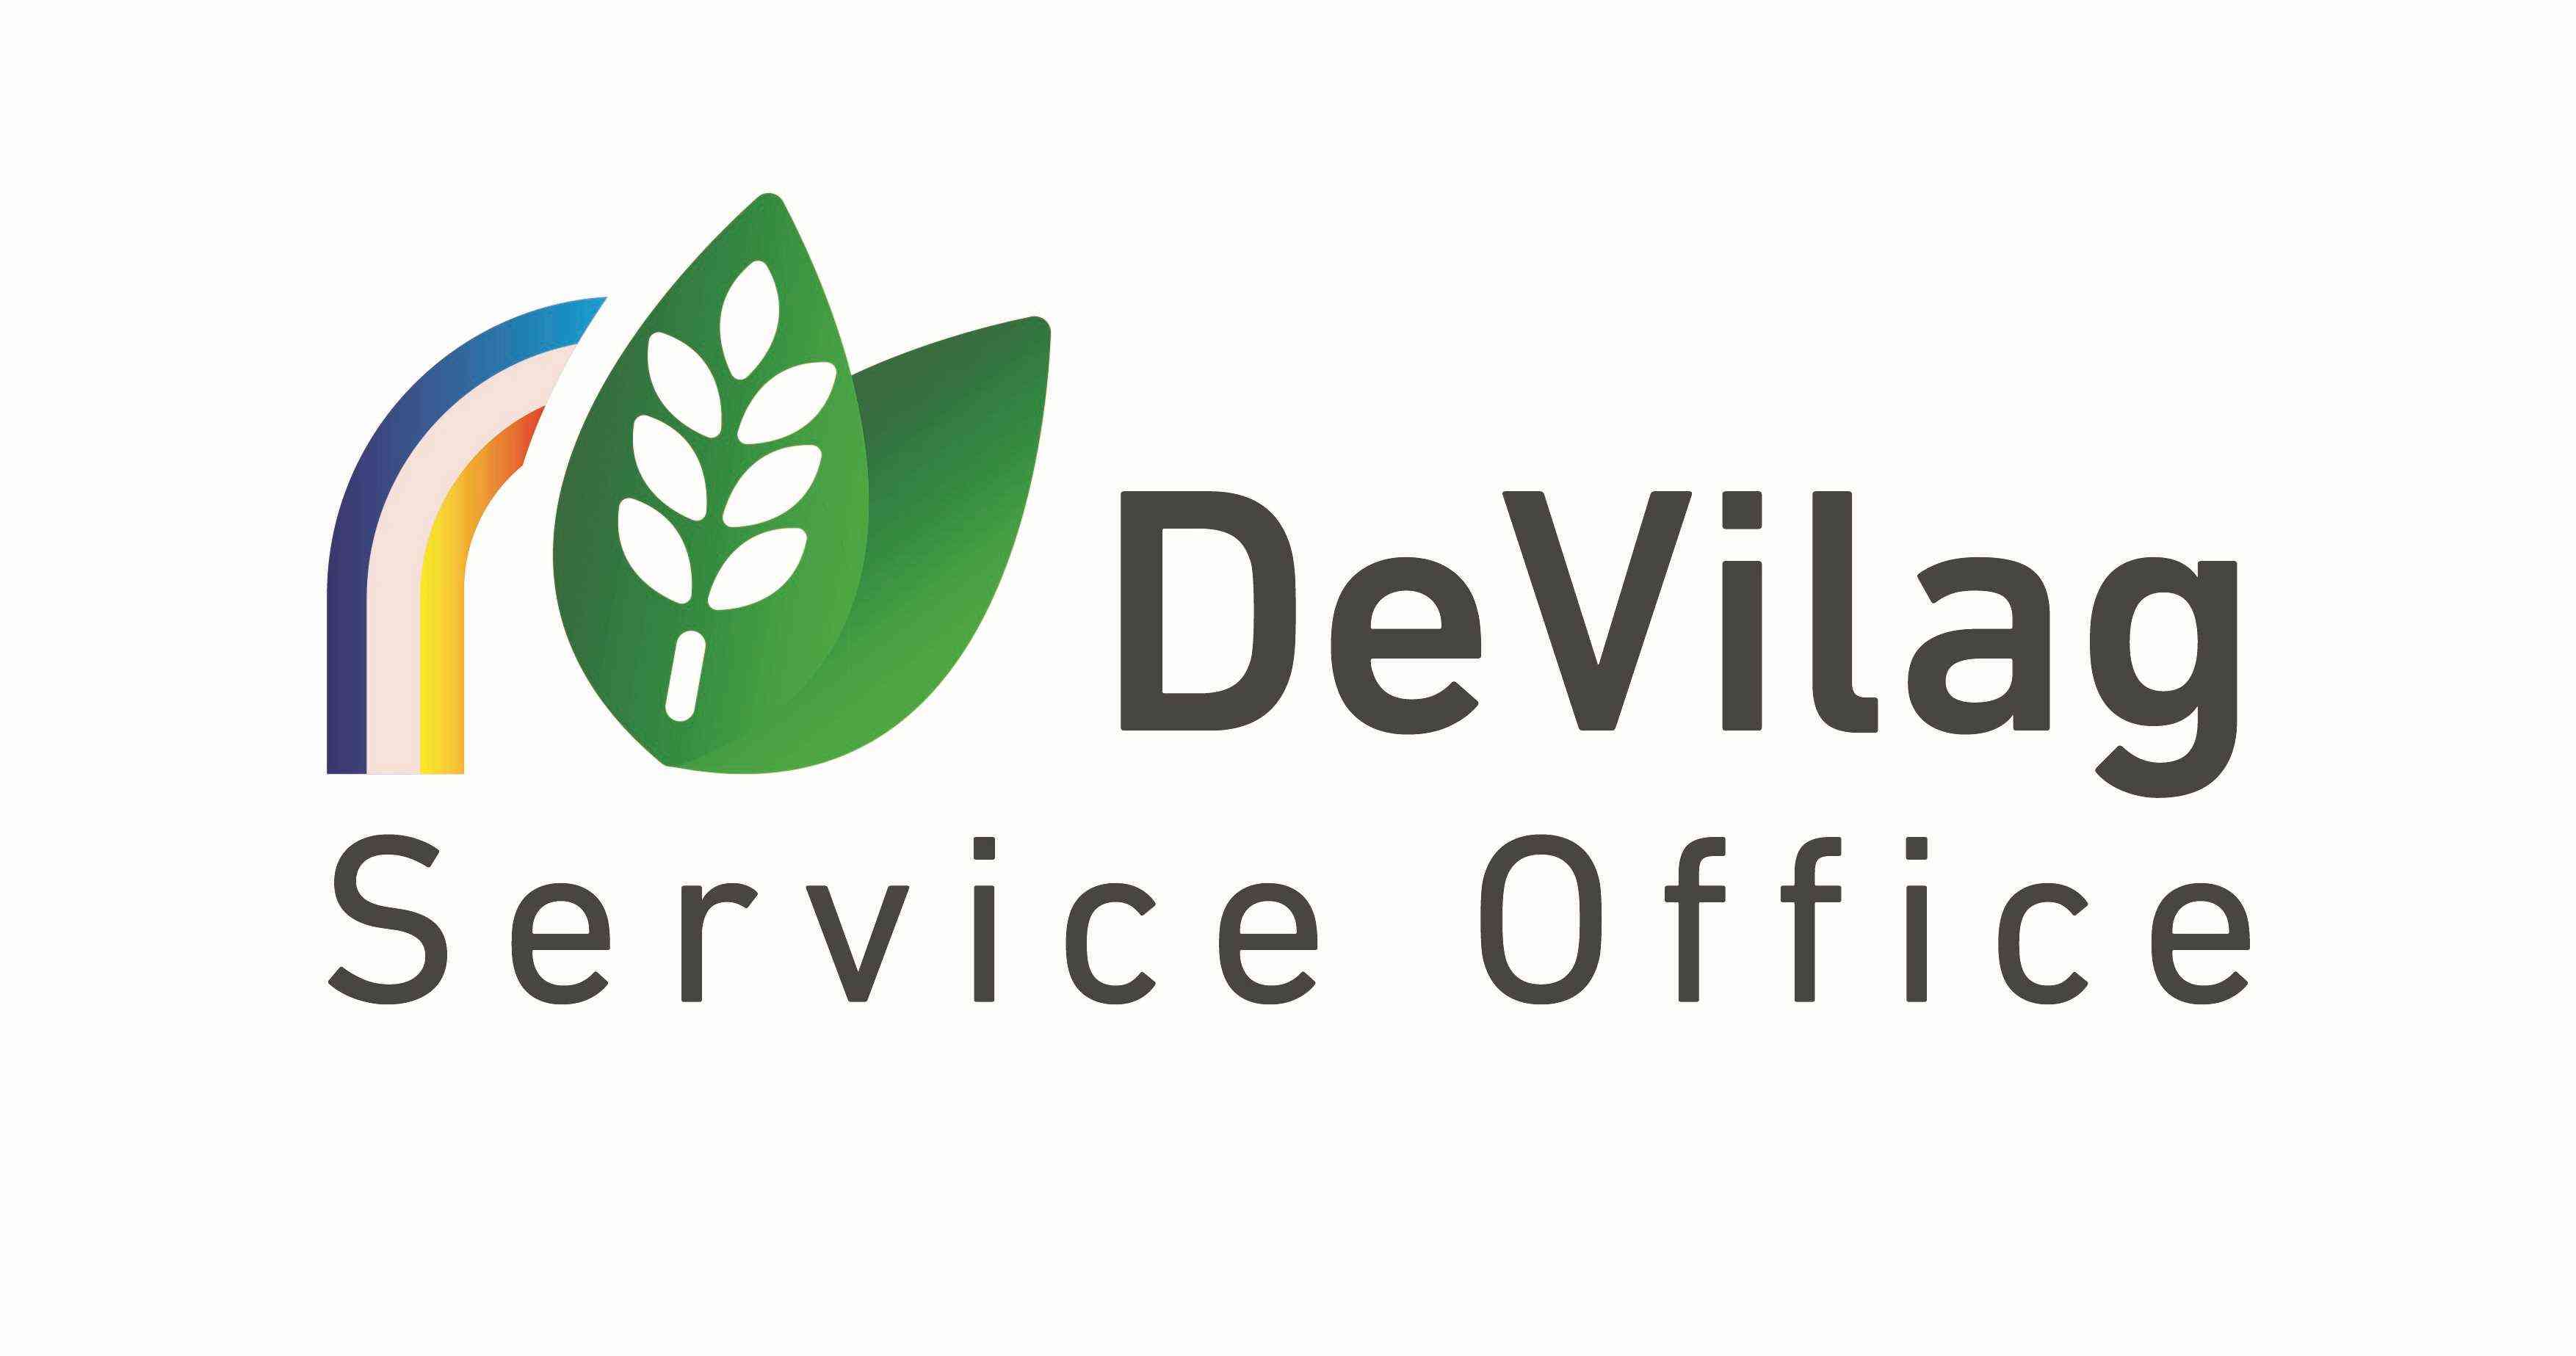 devilag service office logo